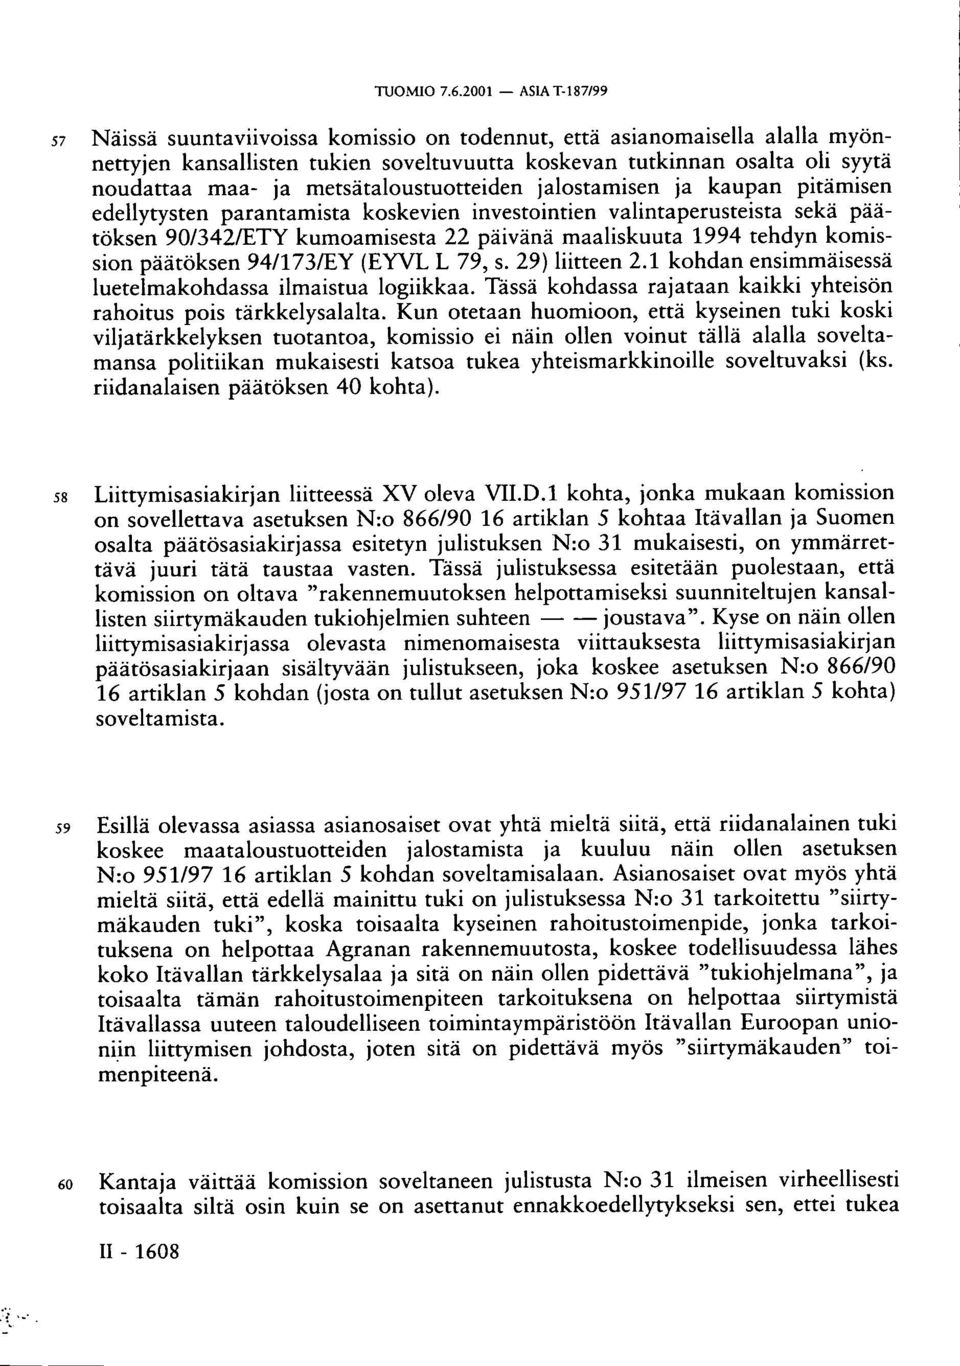 metsätaloustuotteiden jalostamisen ja kaupan pitämisen edellytysten parantamista koskevien investointien valintaperusteista sekä päätöksen 90/342/ETY kumoamisesta 22 päivänä maaliskuuta 1994 tehdyn